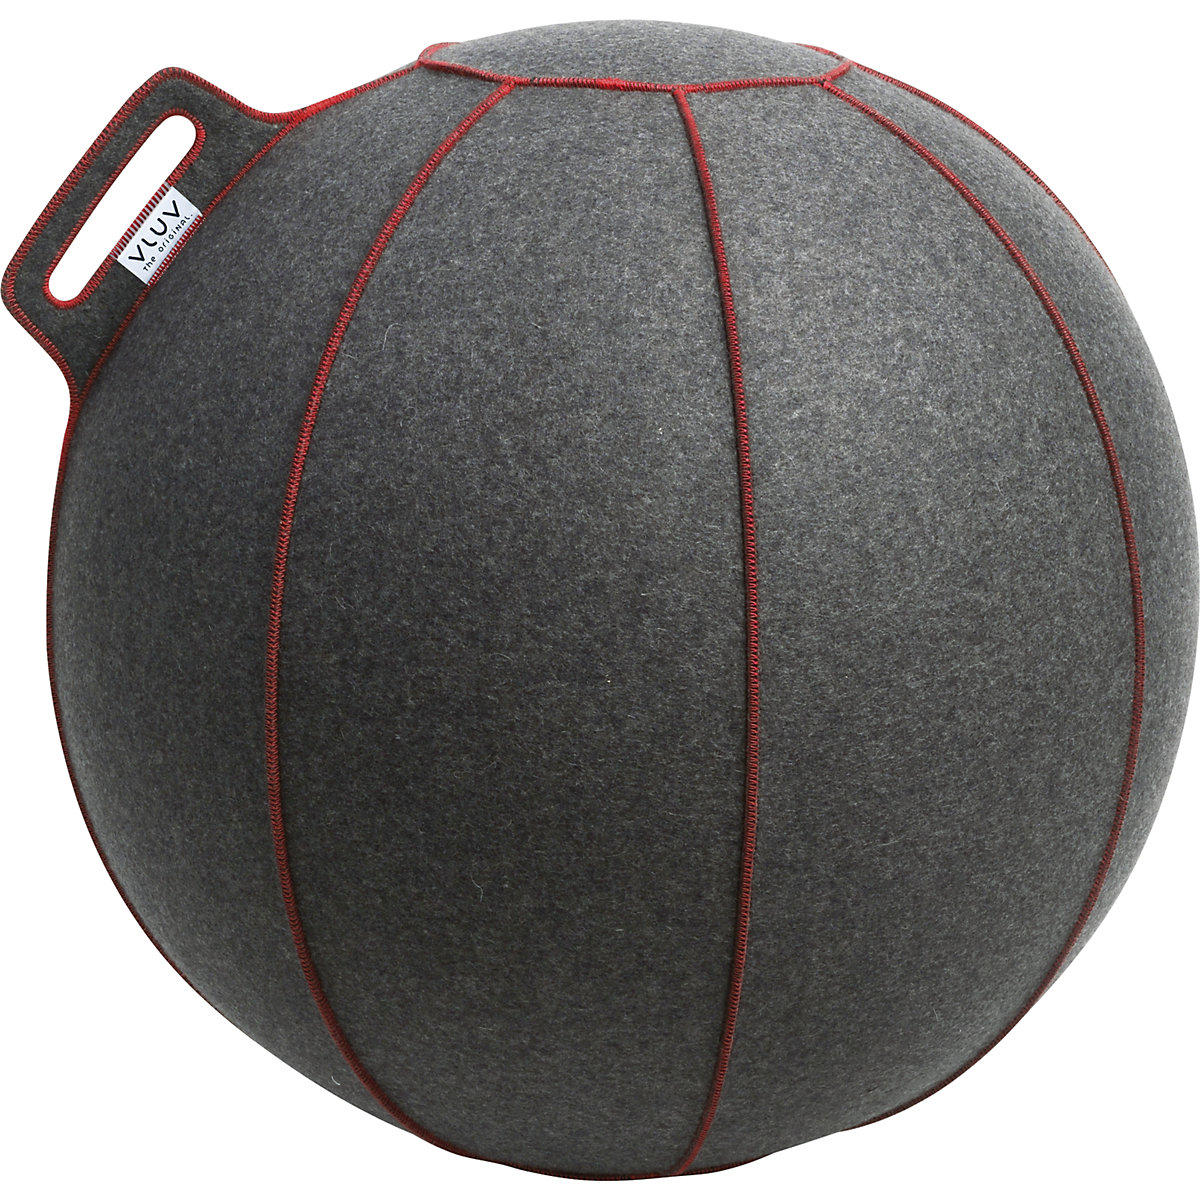 VELT Swiss ball – VLUV, made of merino wool felt, 600 – 650 mm, mottled grey/red